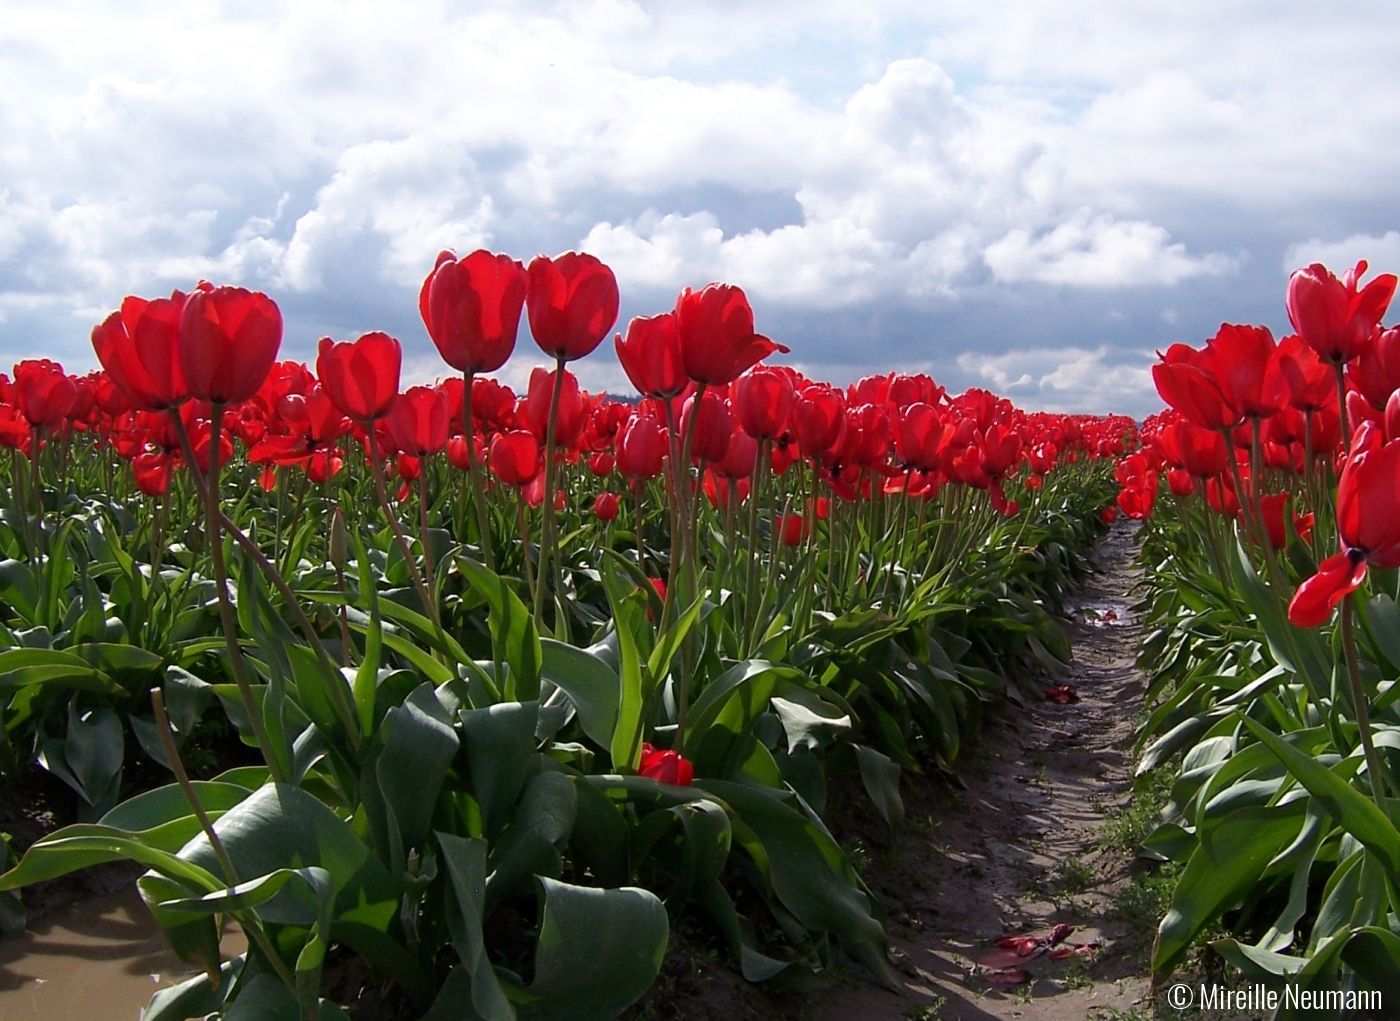 Skagit Valley Tulip field by Mireille Neumann